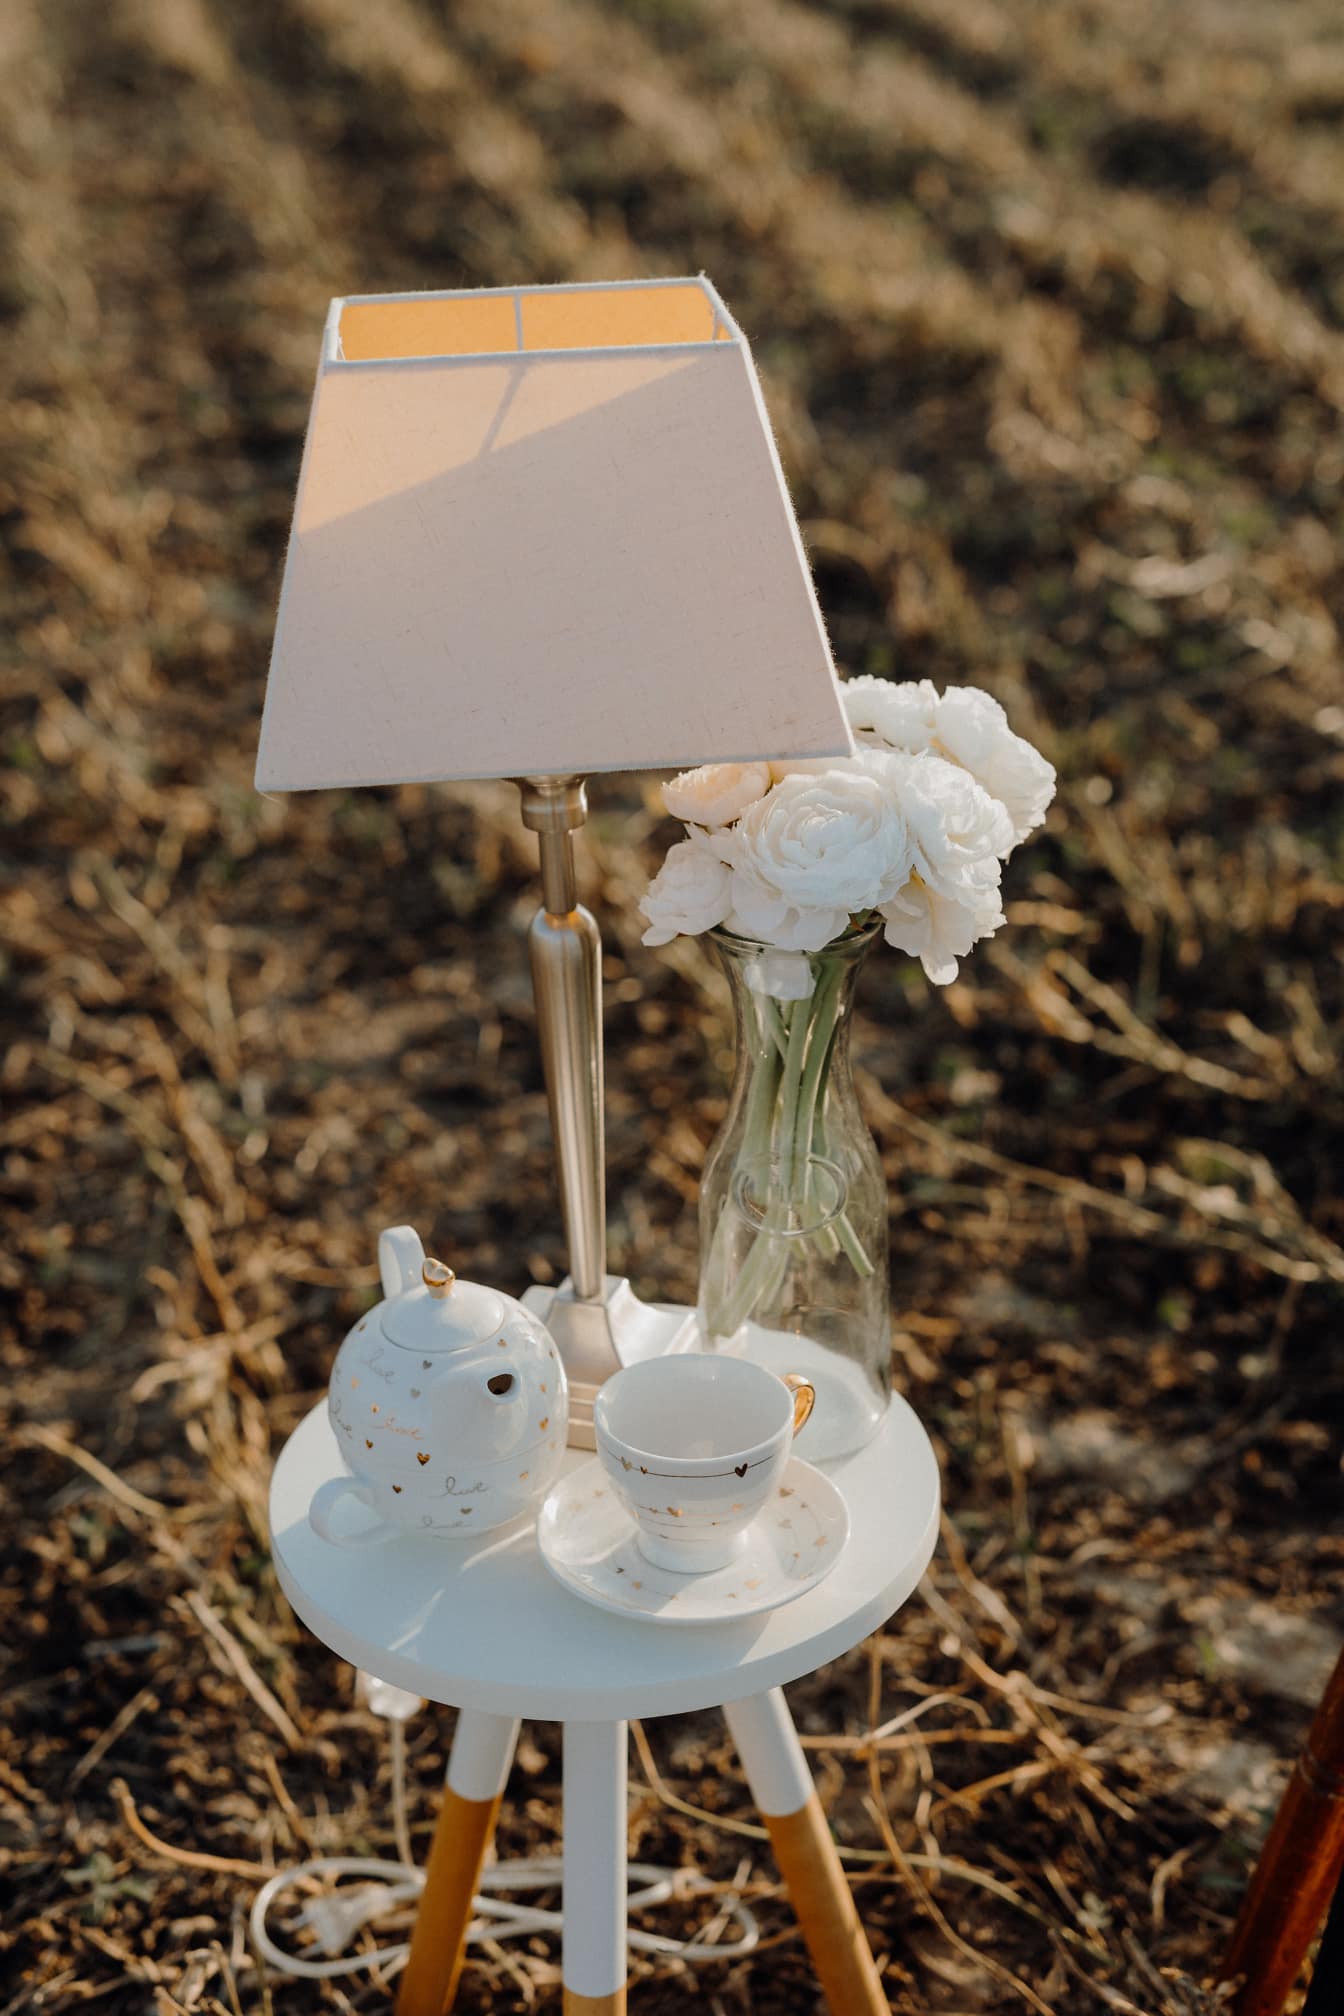 Mesa con una lámpara moderna, tetera de porcelana y un jarrón de cristal con flores de rosas blancas